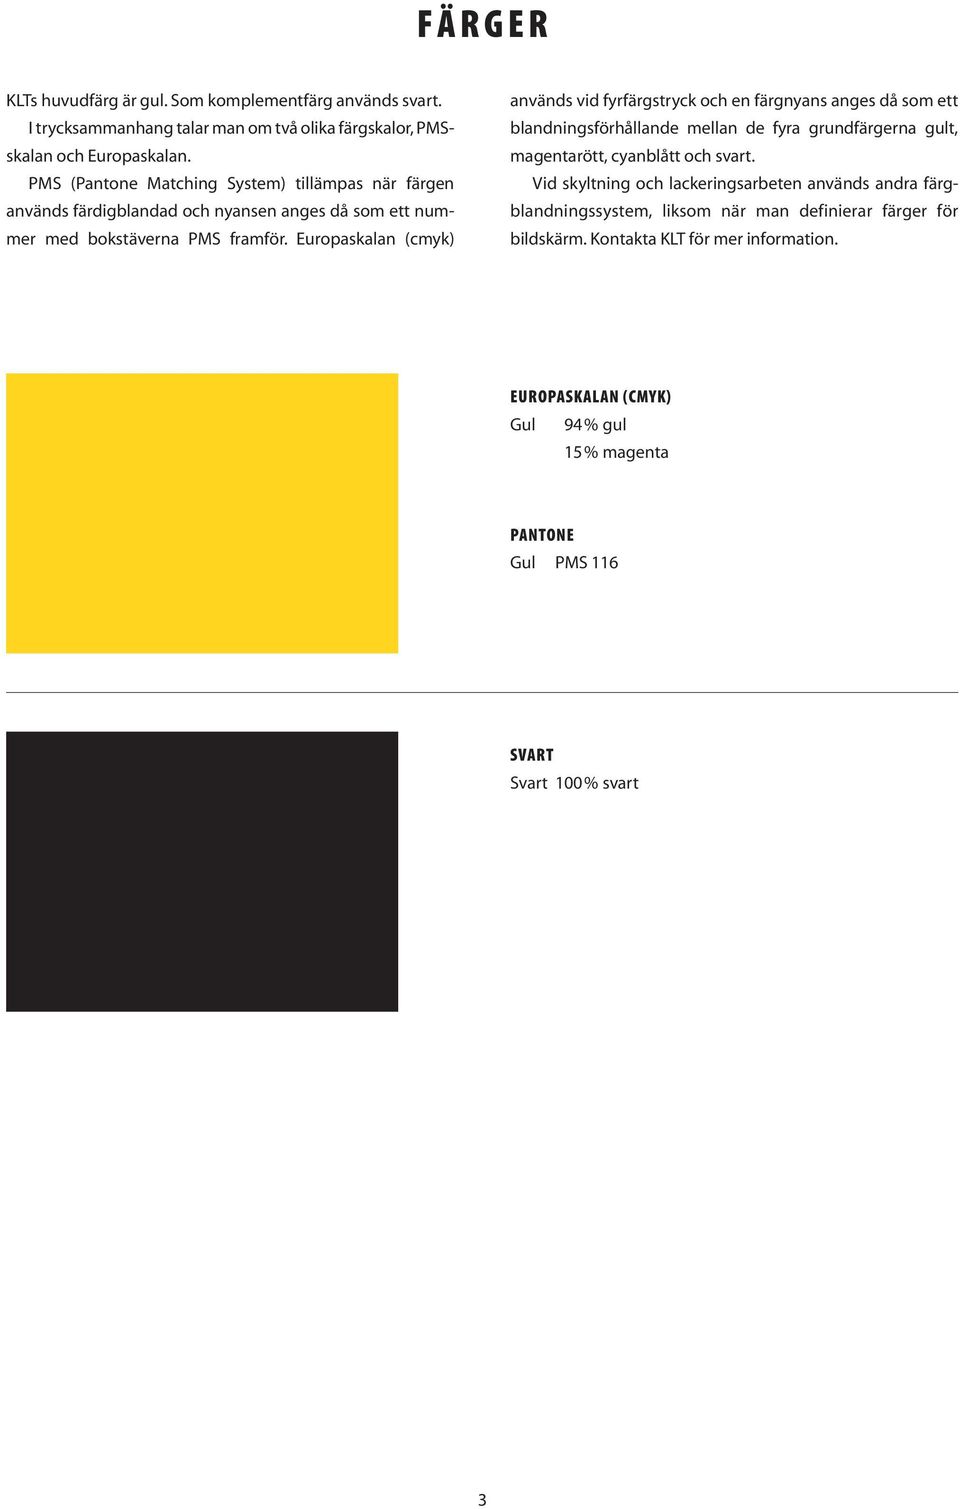 Europaskalan (cmyk) används vid fyrfärgstryck och en färgnyans anges då som ett blandningsförhållande mellan de fyra grundfärgerna gult, magentarött, cyanblått och svart.